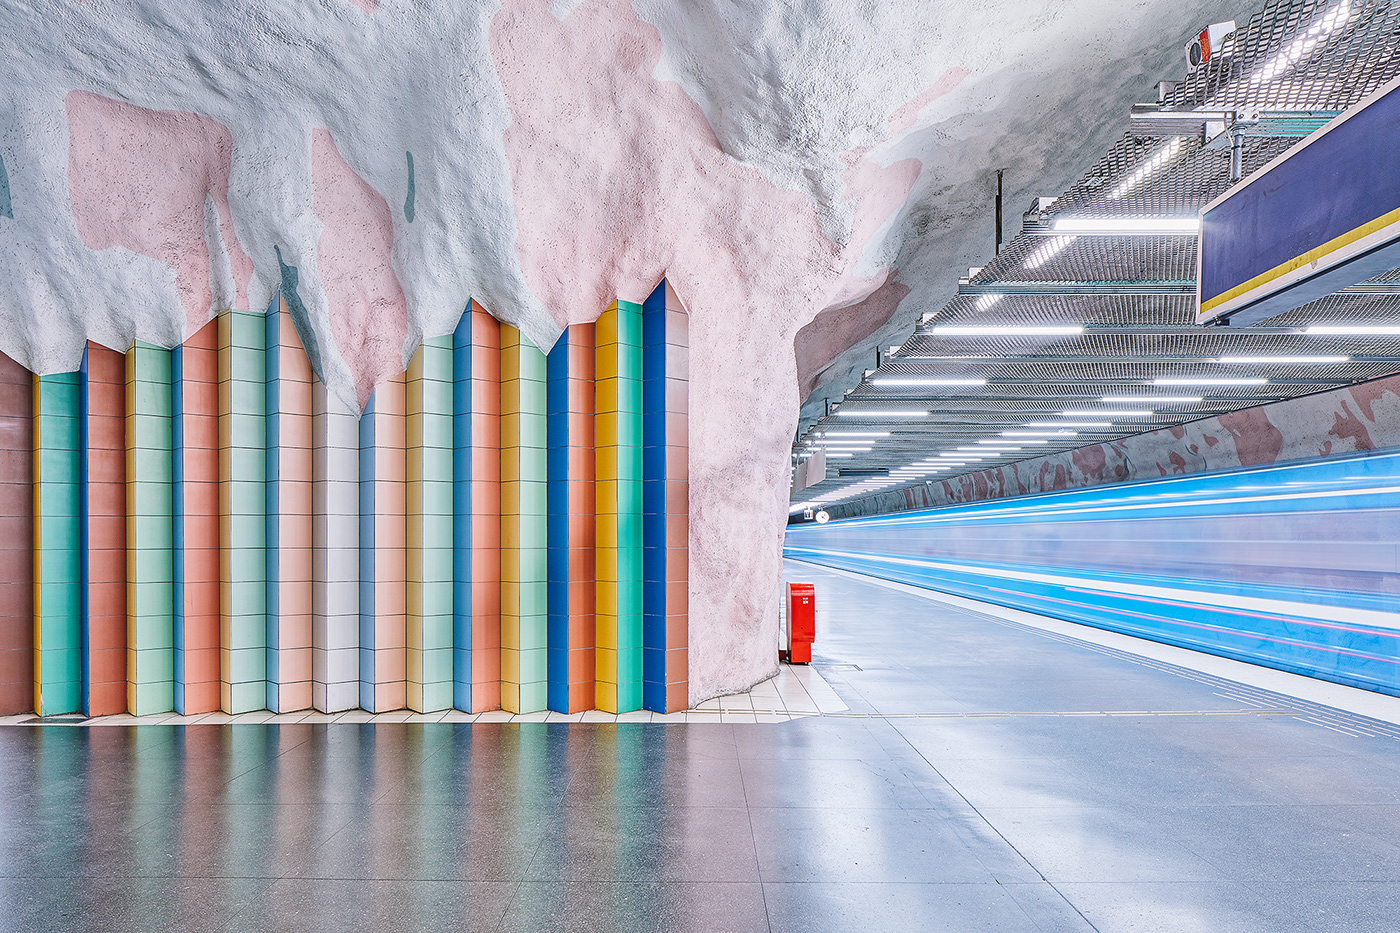 architecture metro STATION train station subway underground Stockholm Sweden